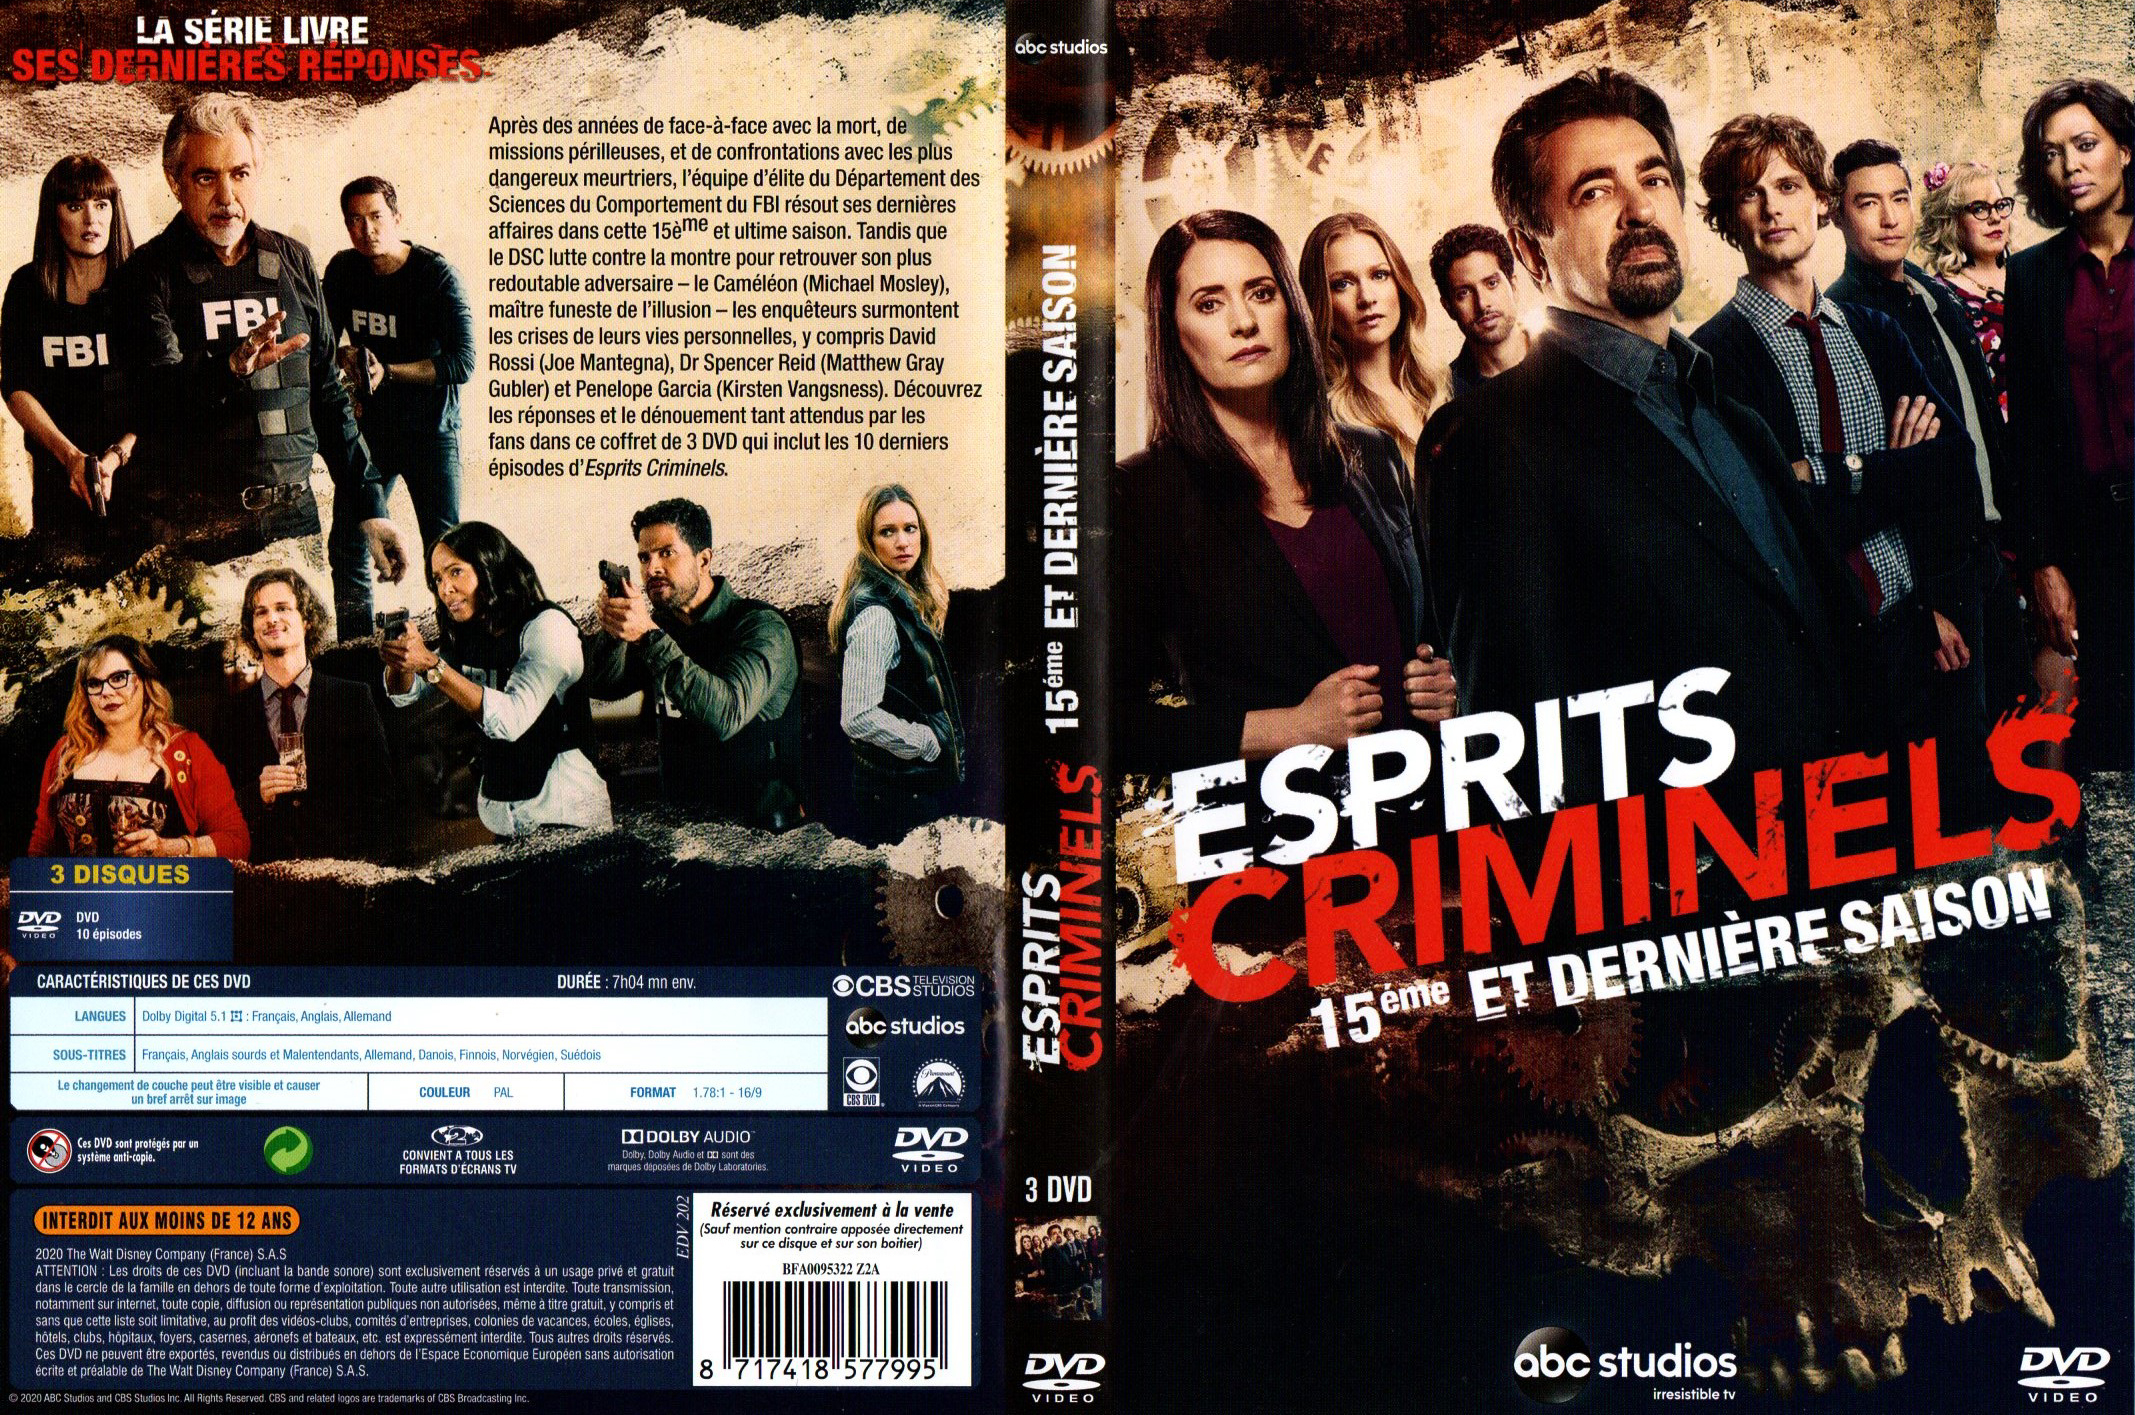 Jaquette DVD Esprits Criminels Saison 15